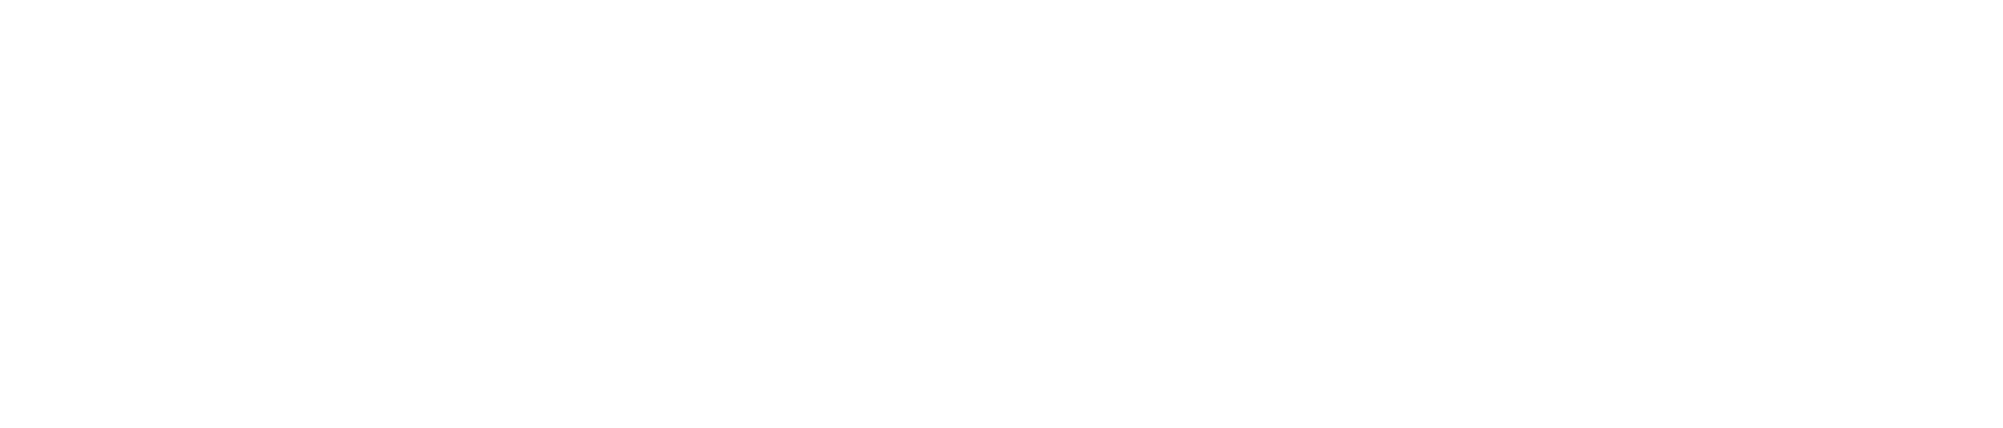 EWC Logo - White